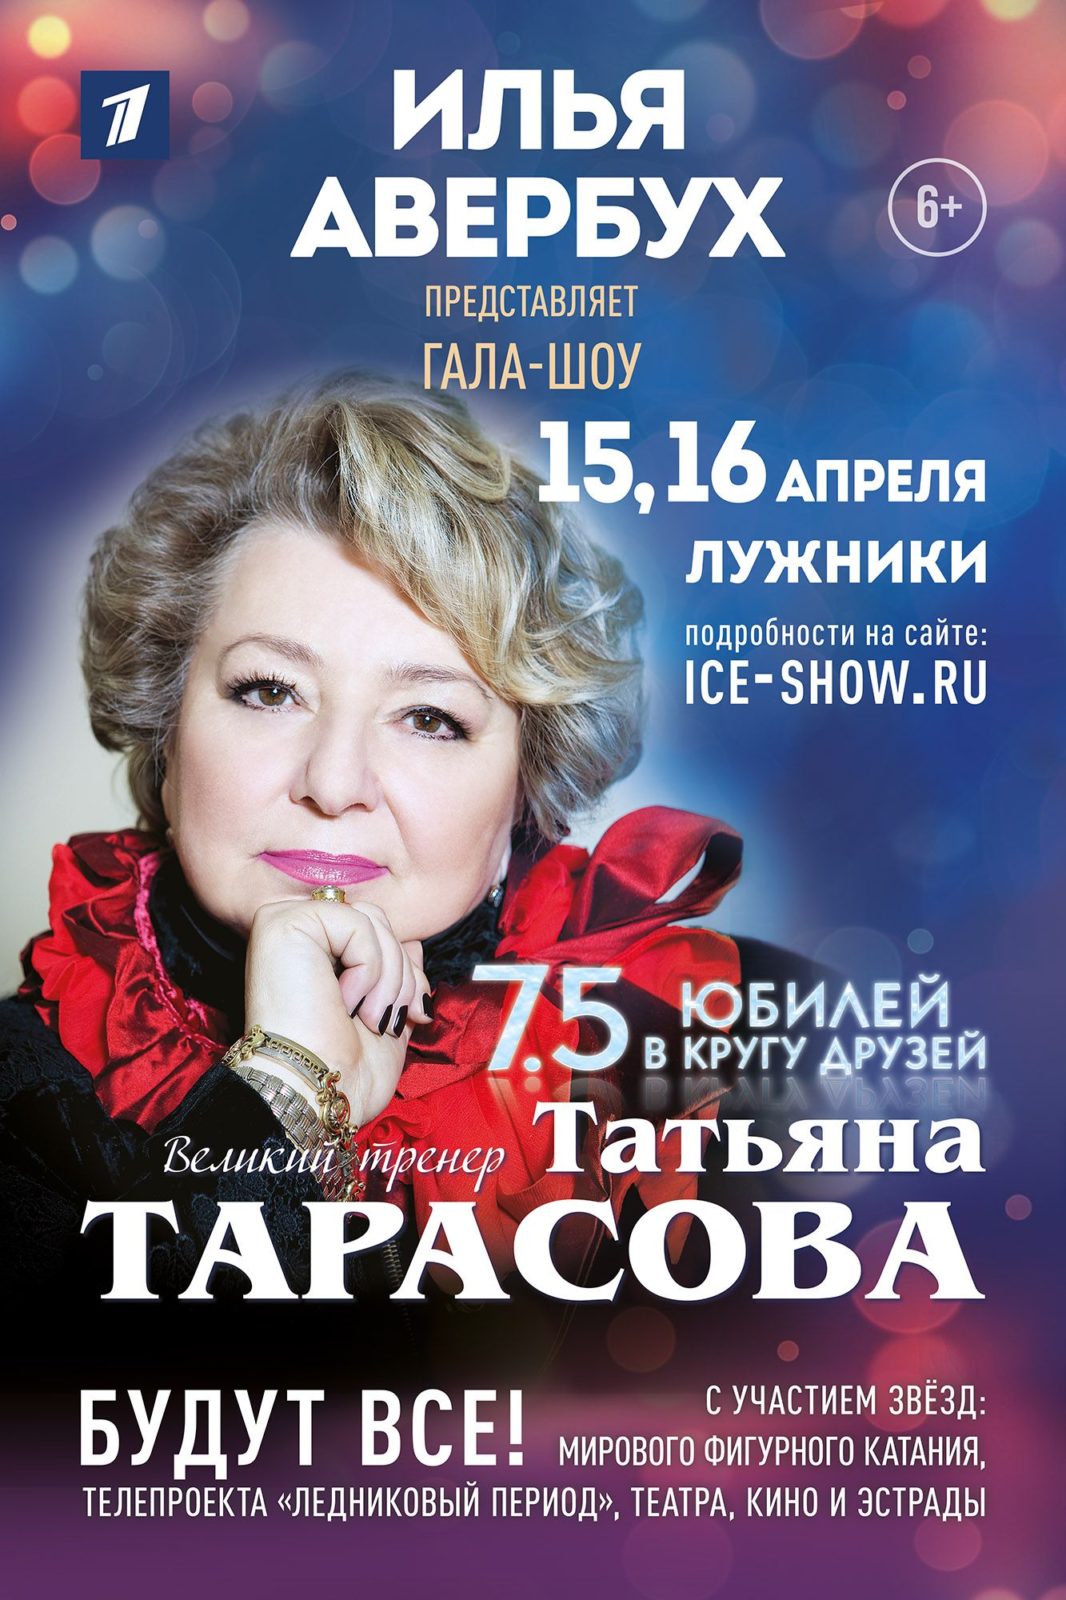 Юбилейное Гала - шоу к юбилею Татьяны Тарасовой состоится в Лужниках